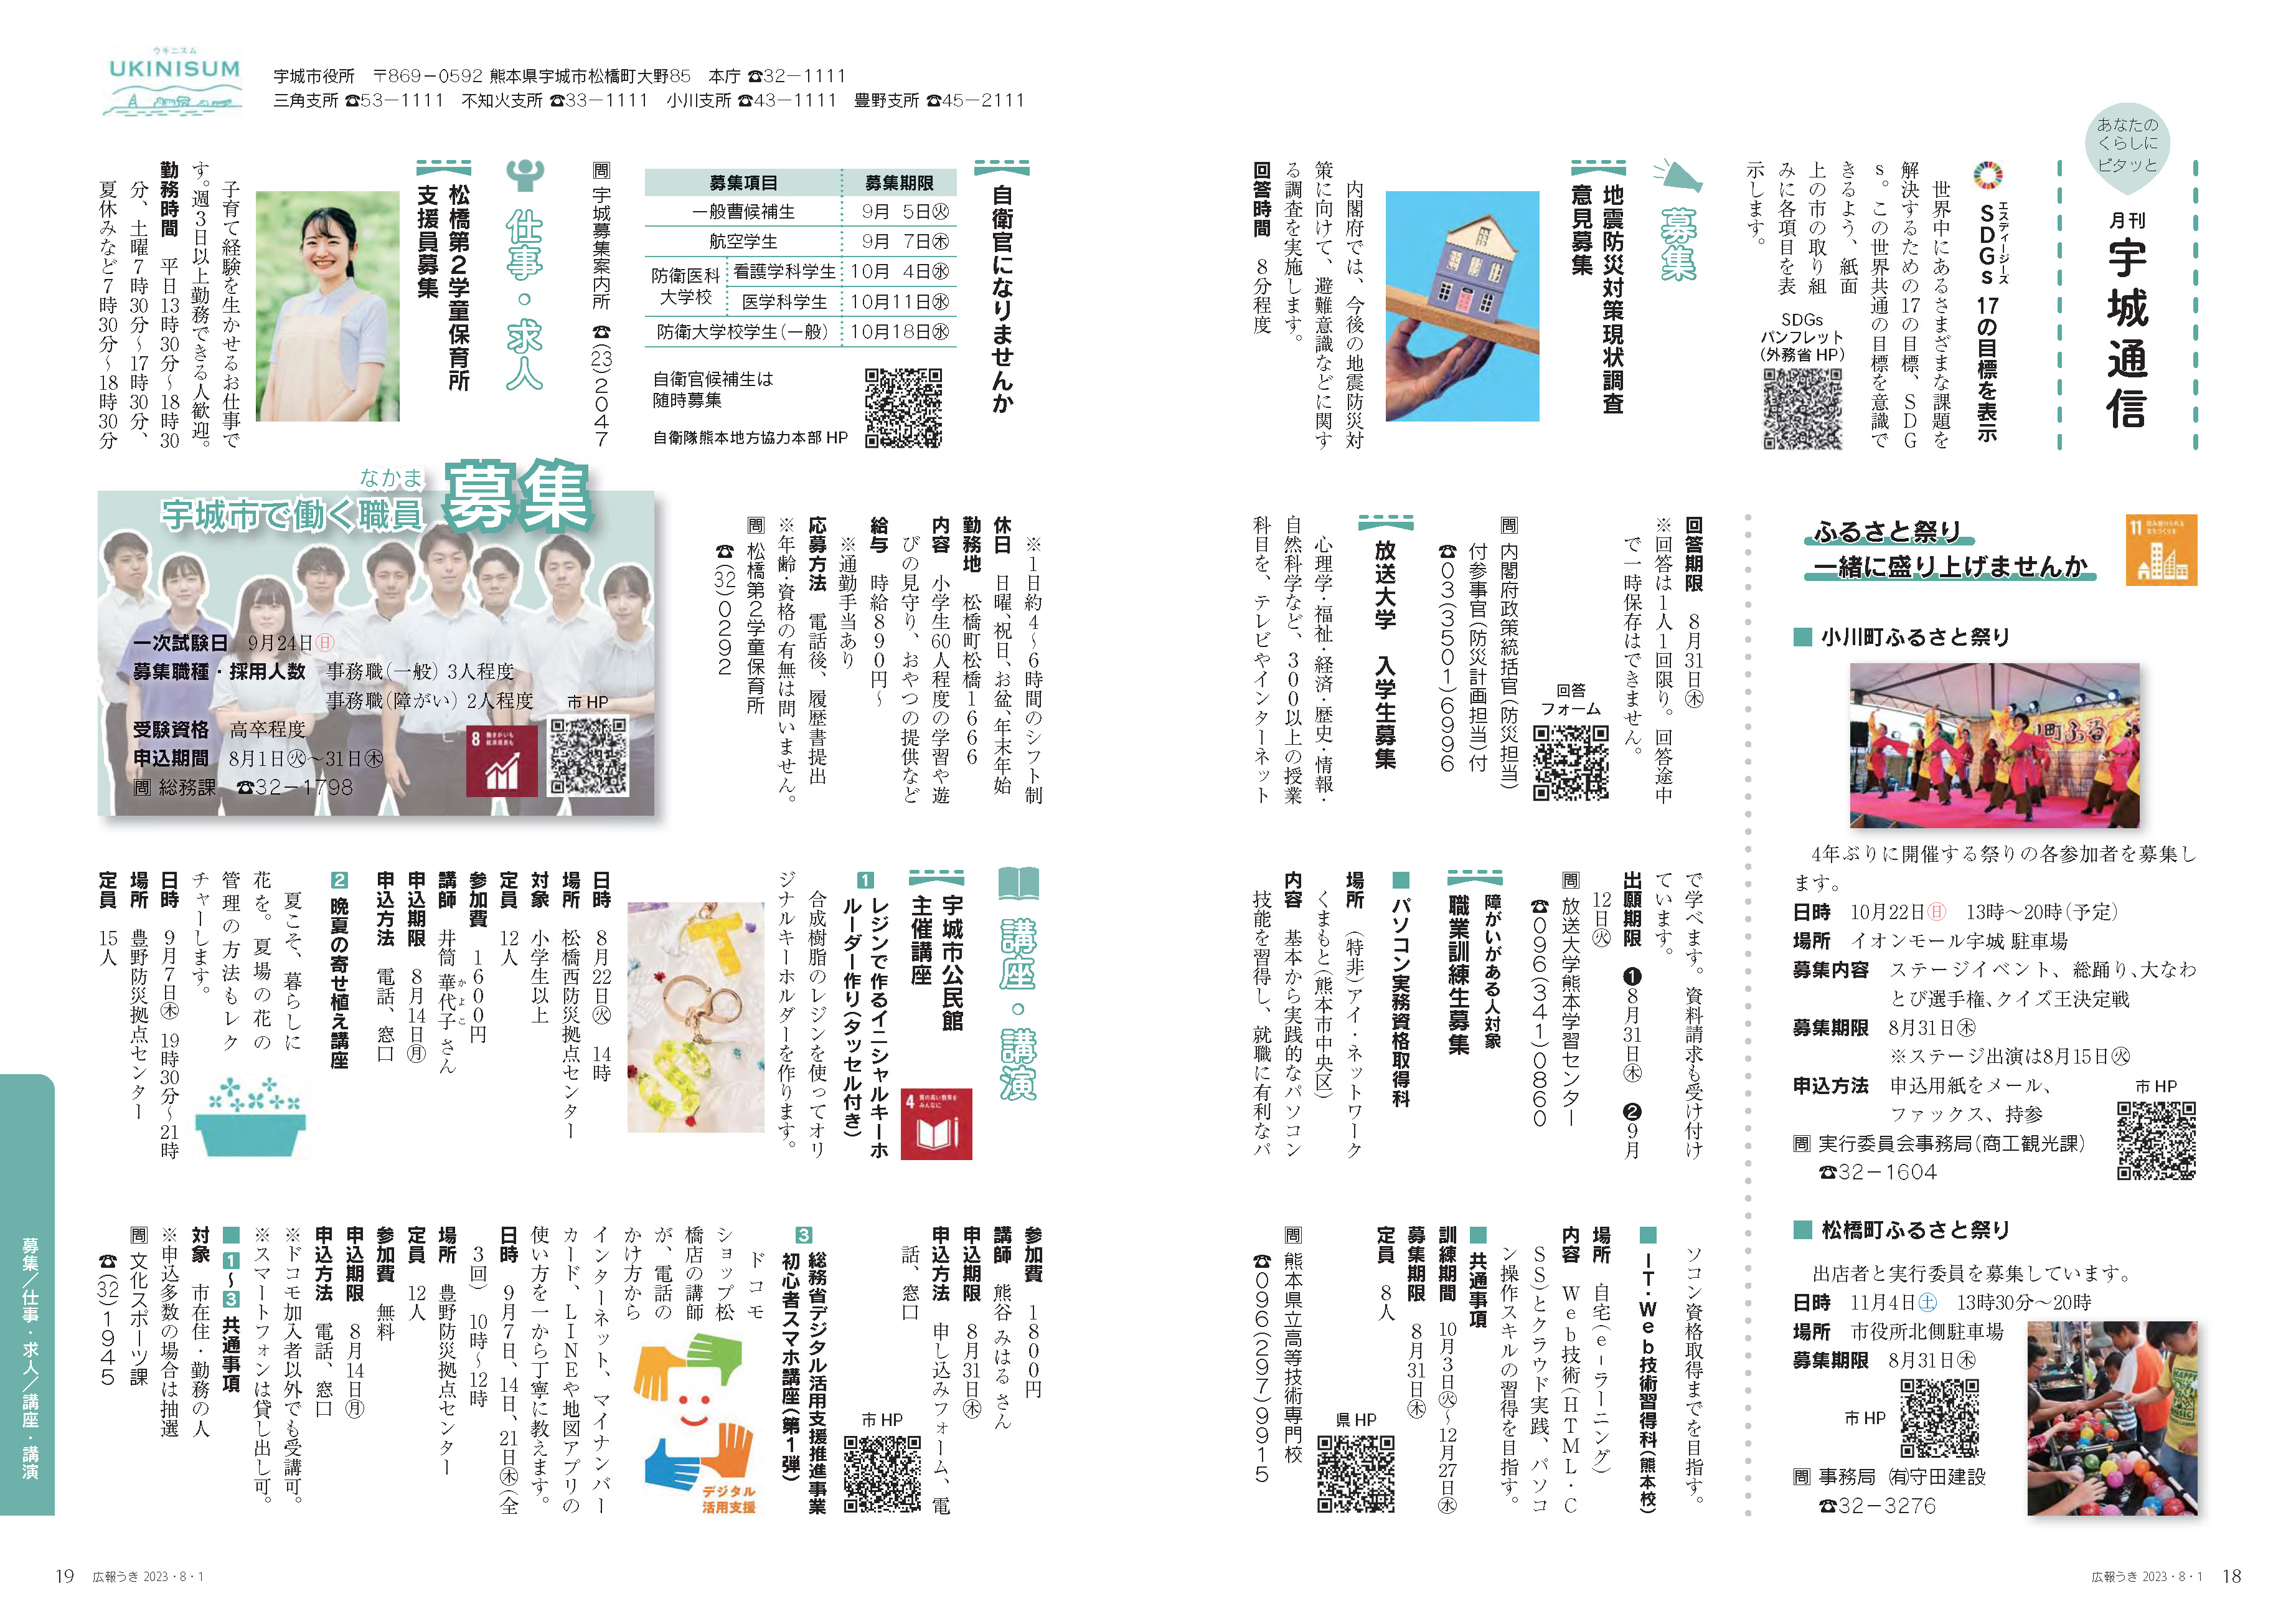 P18、P19 あなたのくらしにピタッと 月刊 宇城通信のページ画像、詳細はPDFファイルを参照ください。